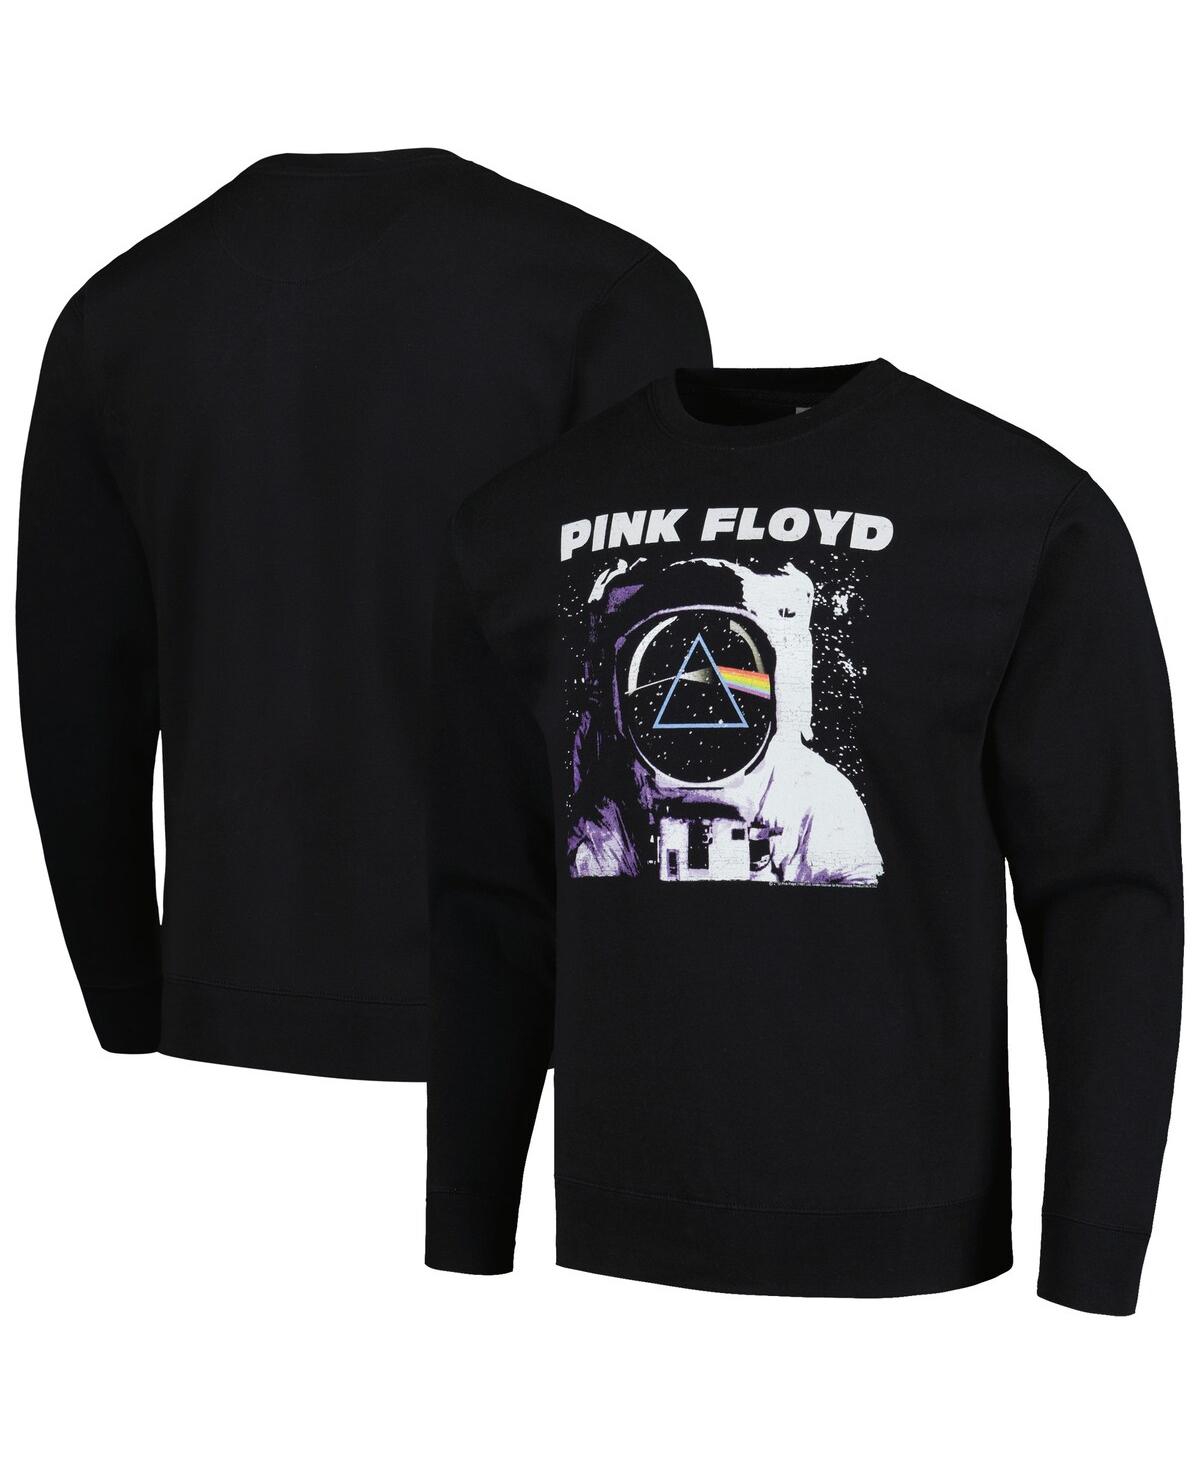 Men's Black Pink Floyd Moon Pullover Sweatshirt - Black